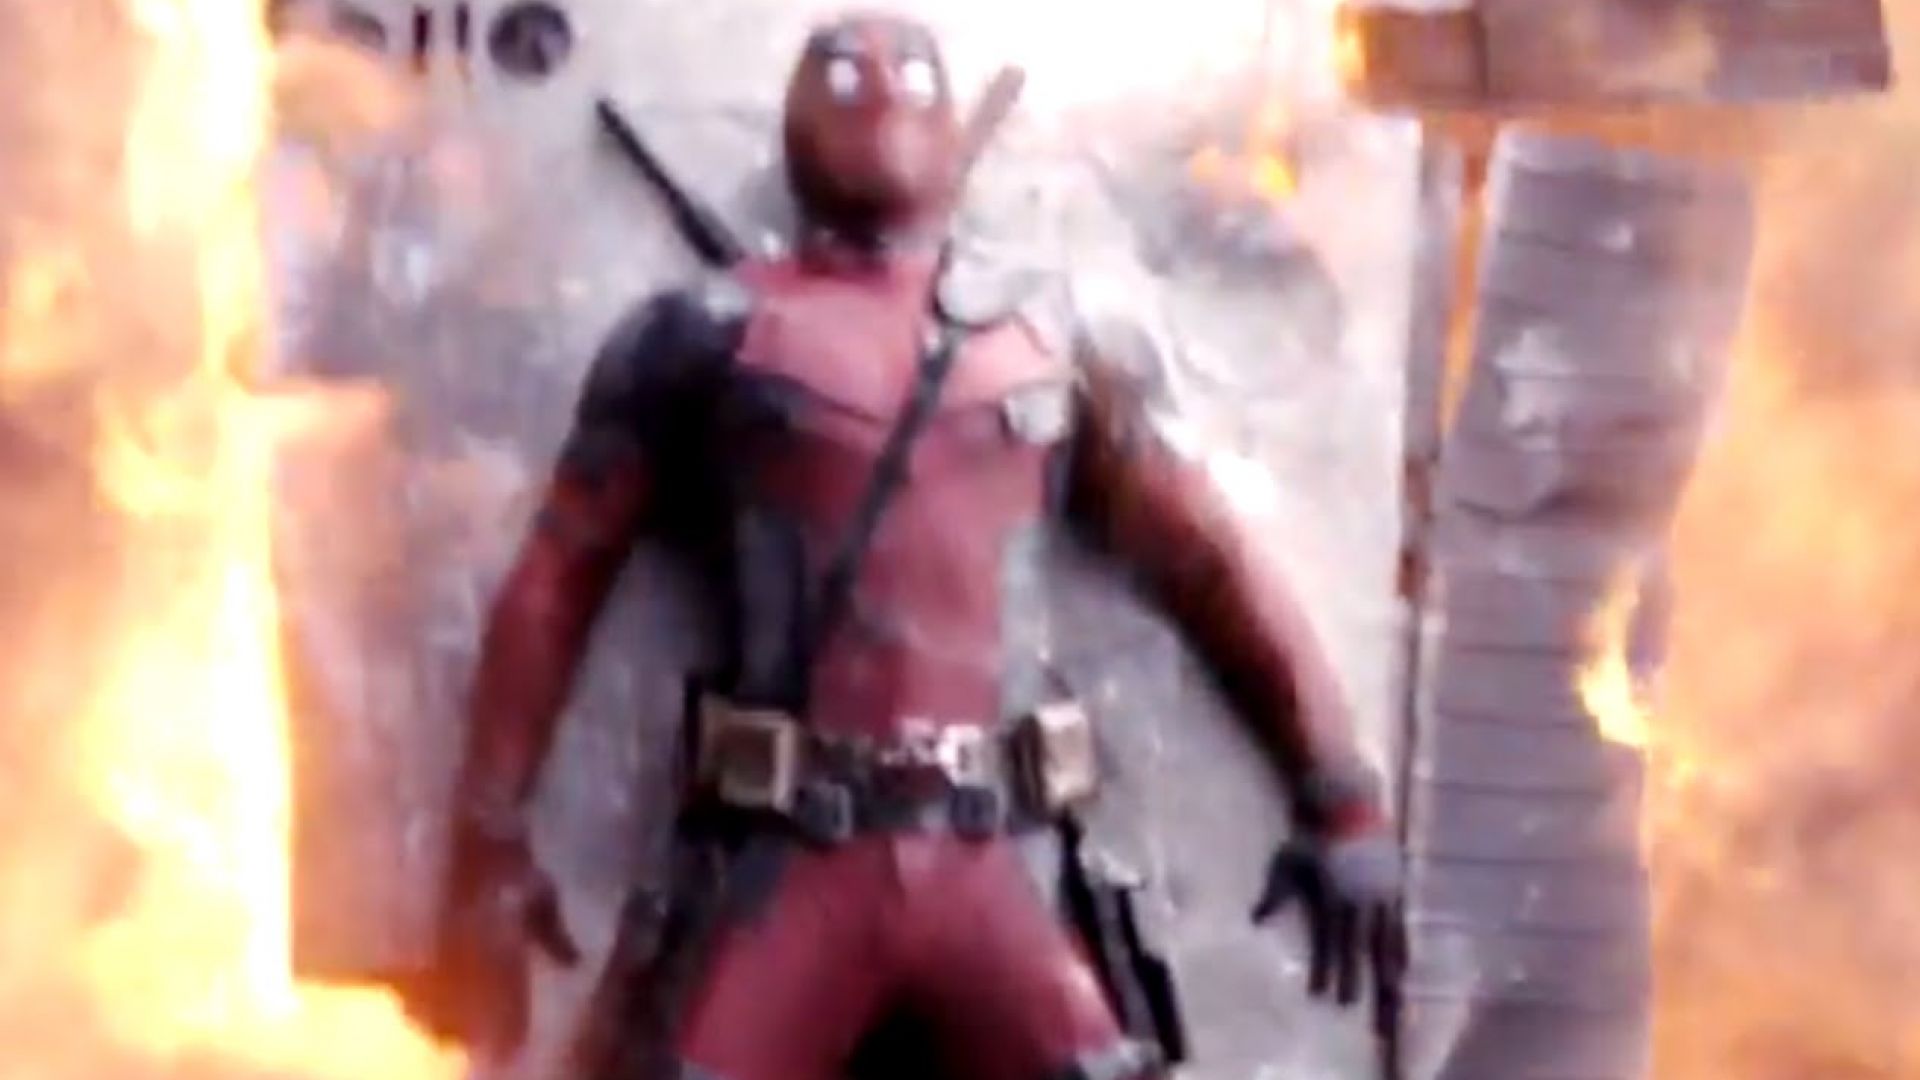 Latest TV Spot for Deadpool is Fiery